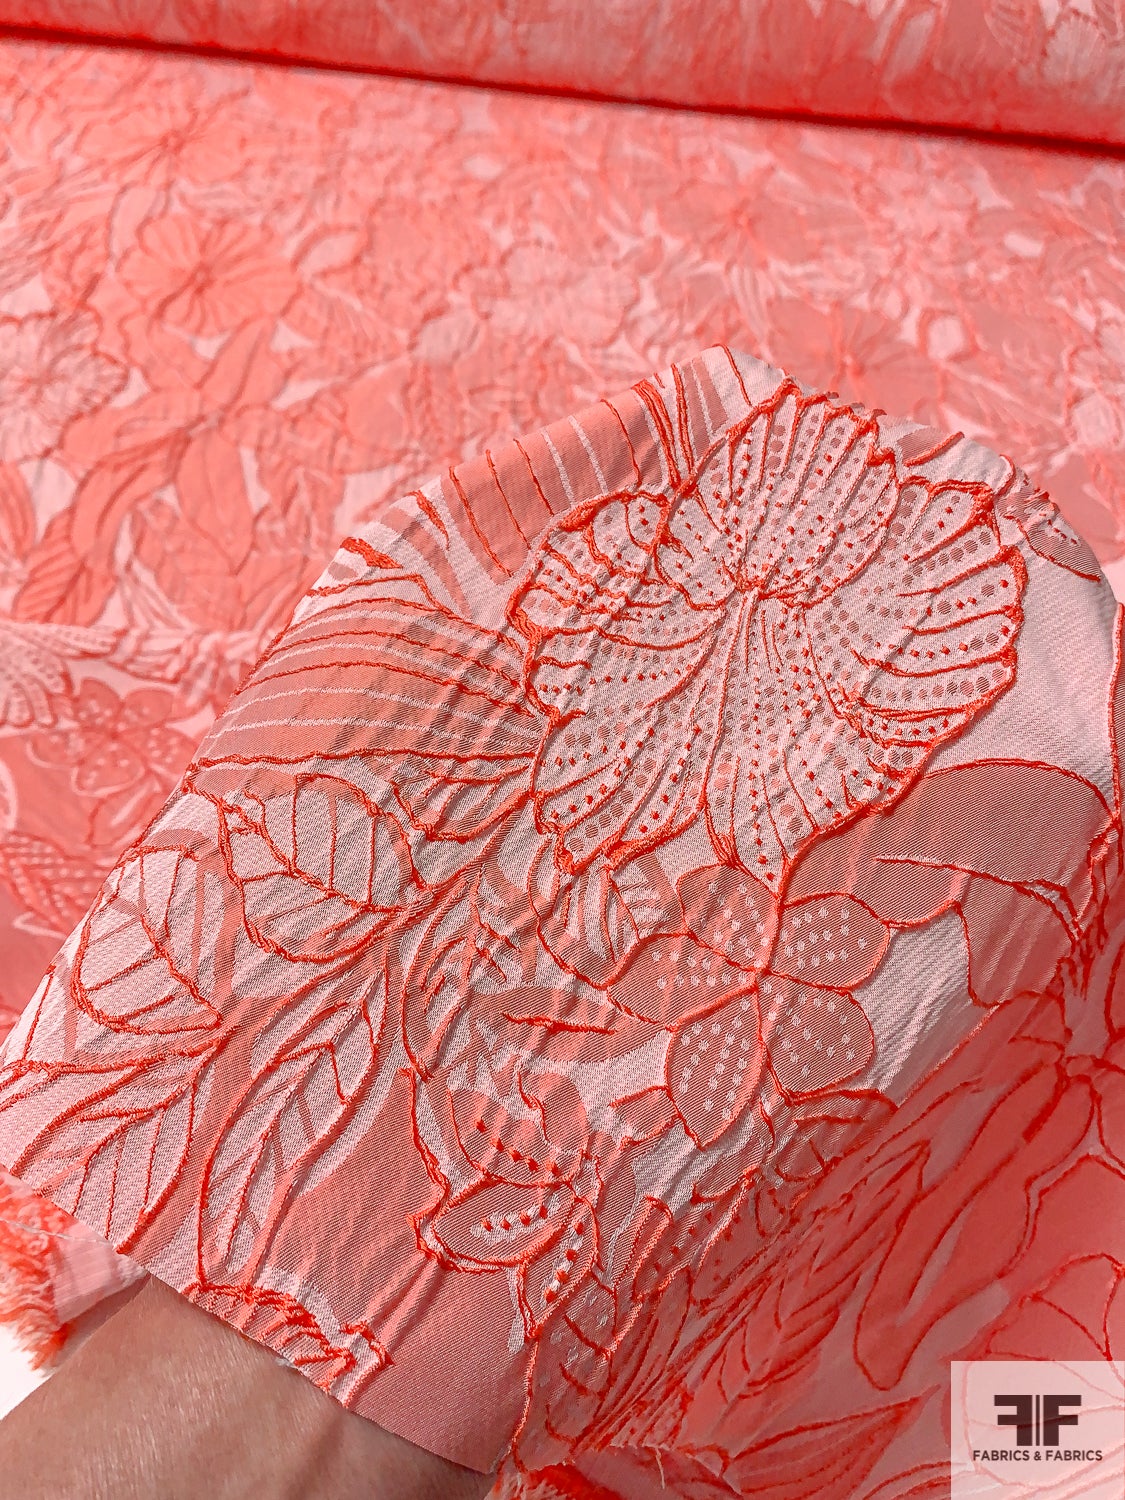 Floral Textured Brocade - Hot Orange-Coral / Light Pink